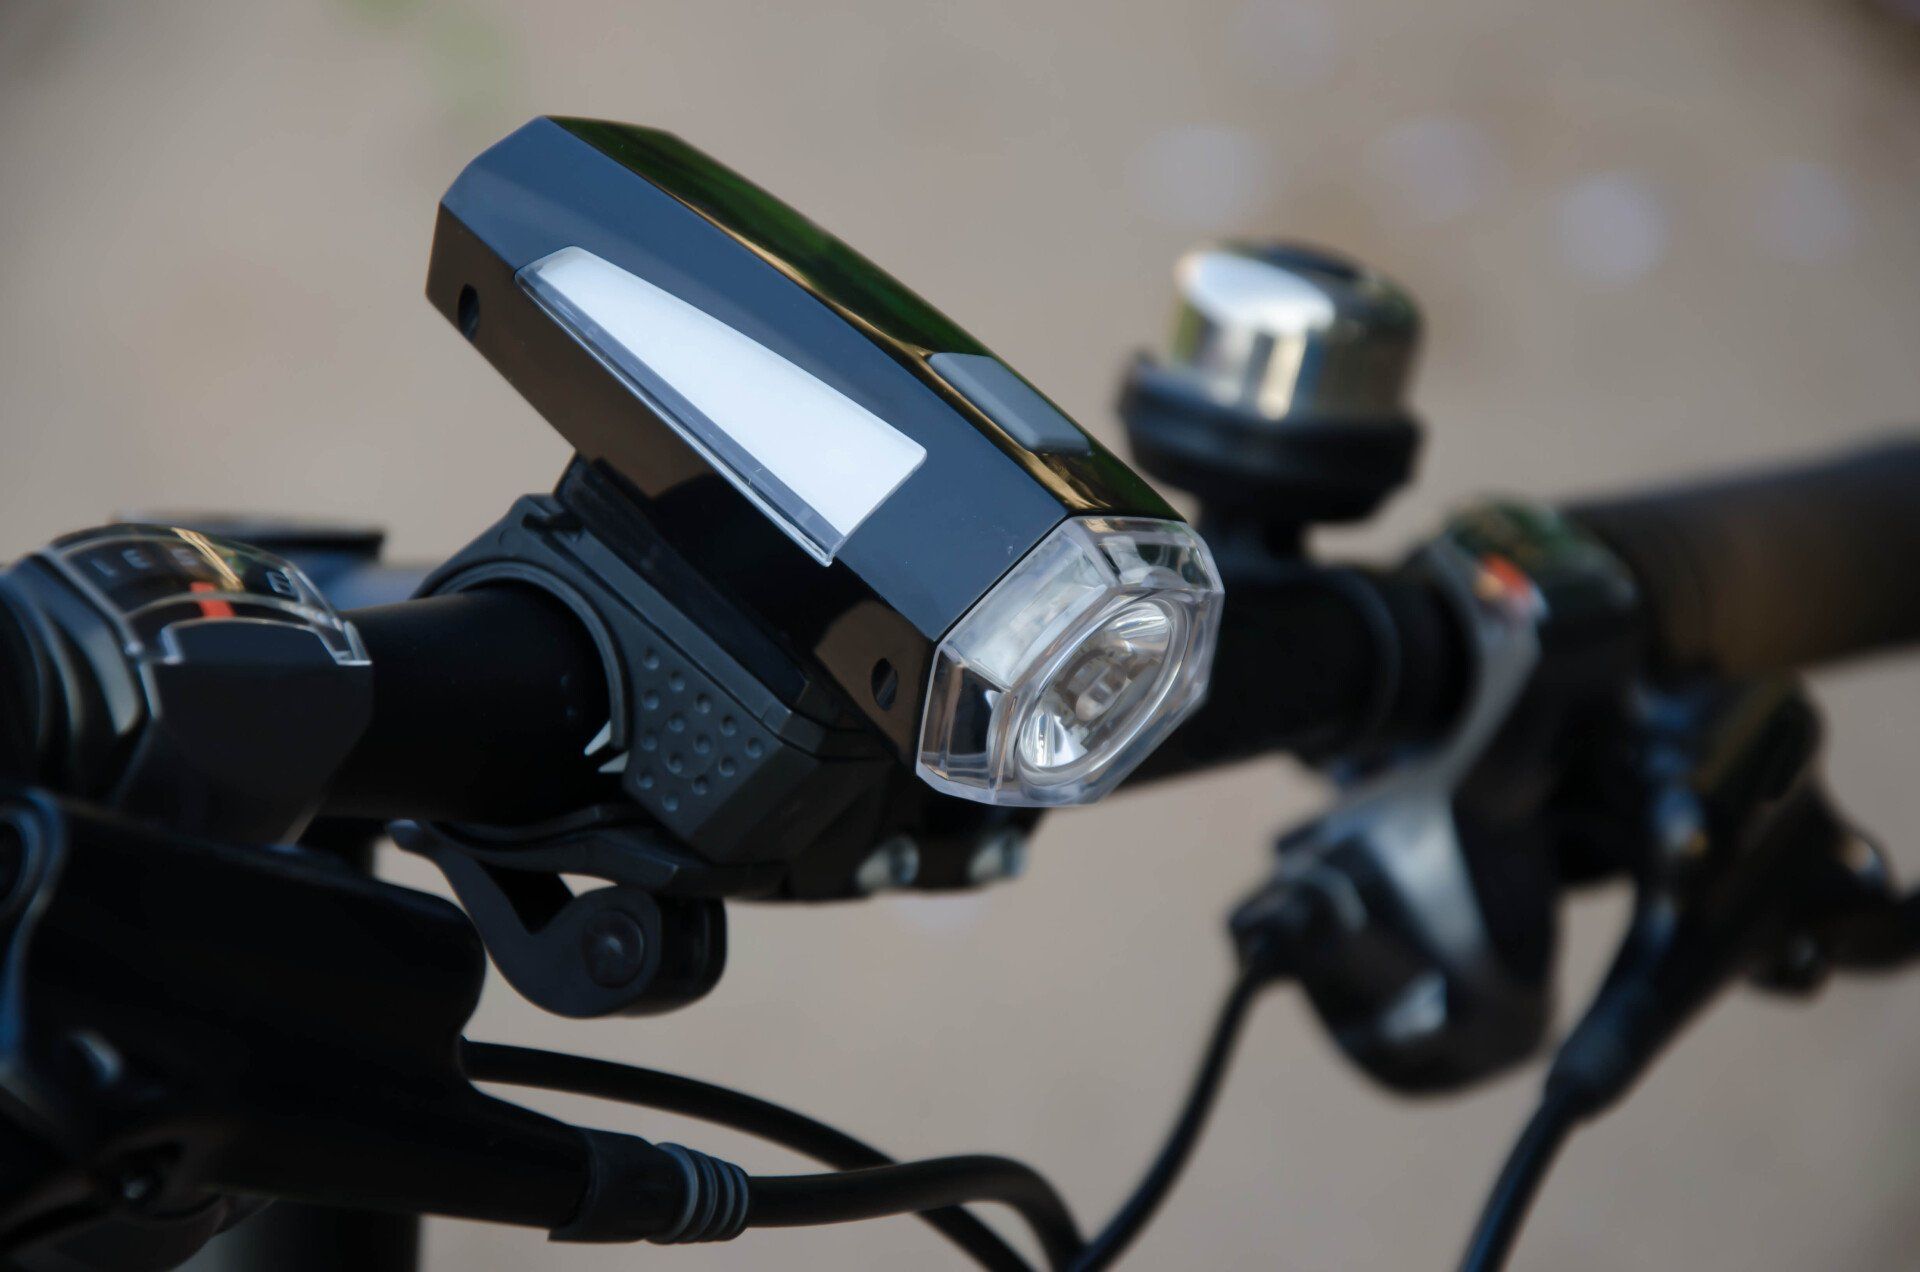 Bicycle light on handlebar